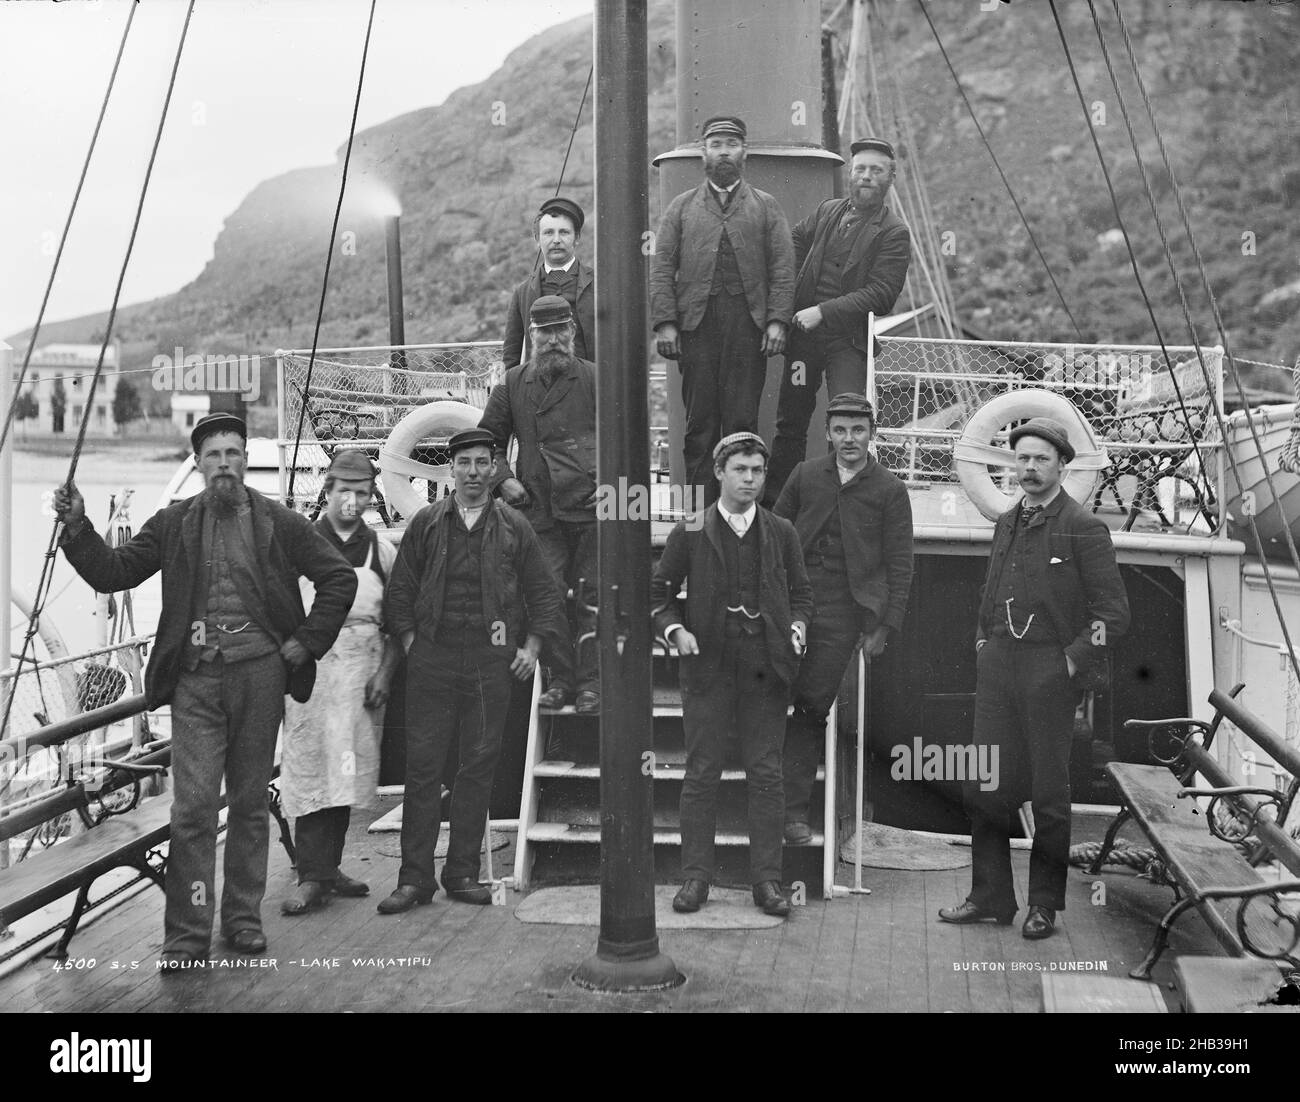 Équipage du P.S. Mountaineer, Lake Wakatipu, studio Burton Brothers, studio de photographie, mars 1887,Dunedin, photographie en noir et blanc, bateau à aubes Mountaineer Banque D'Images